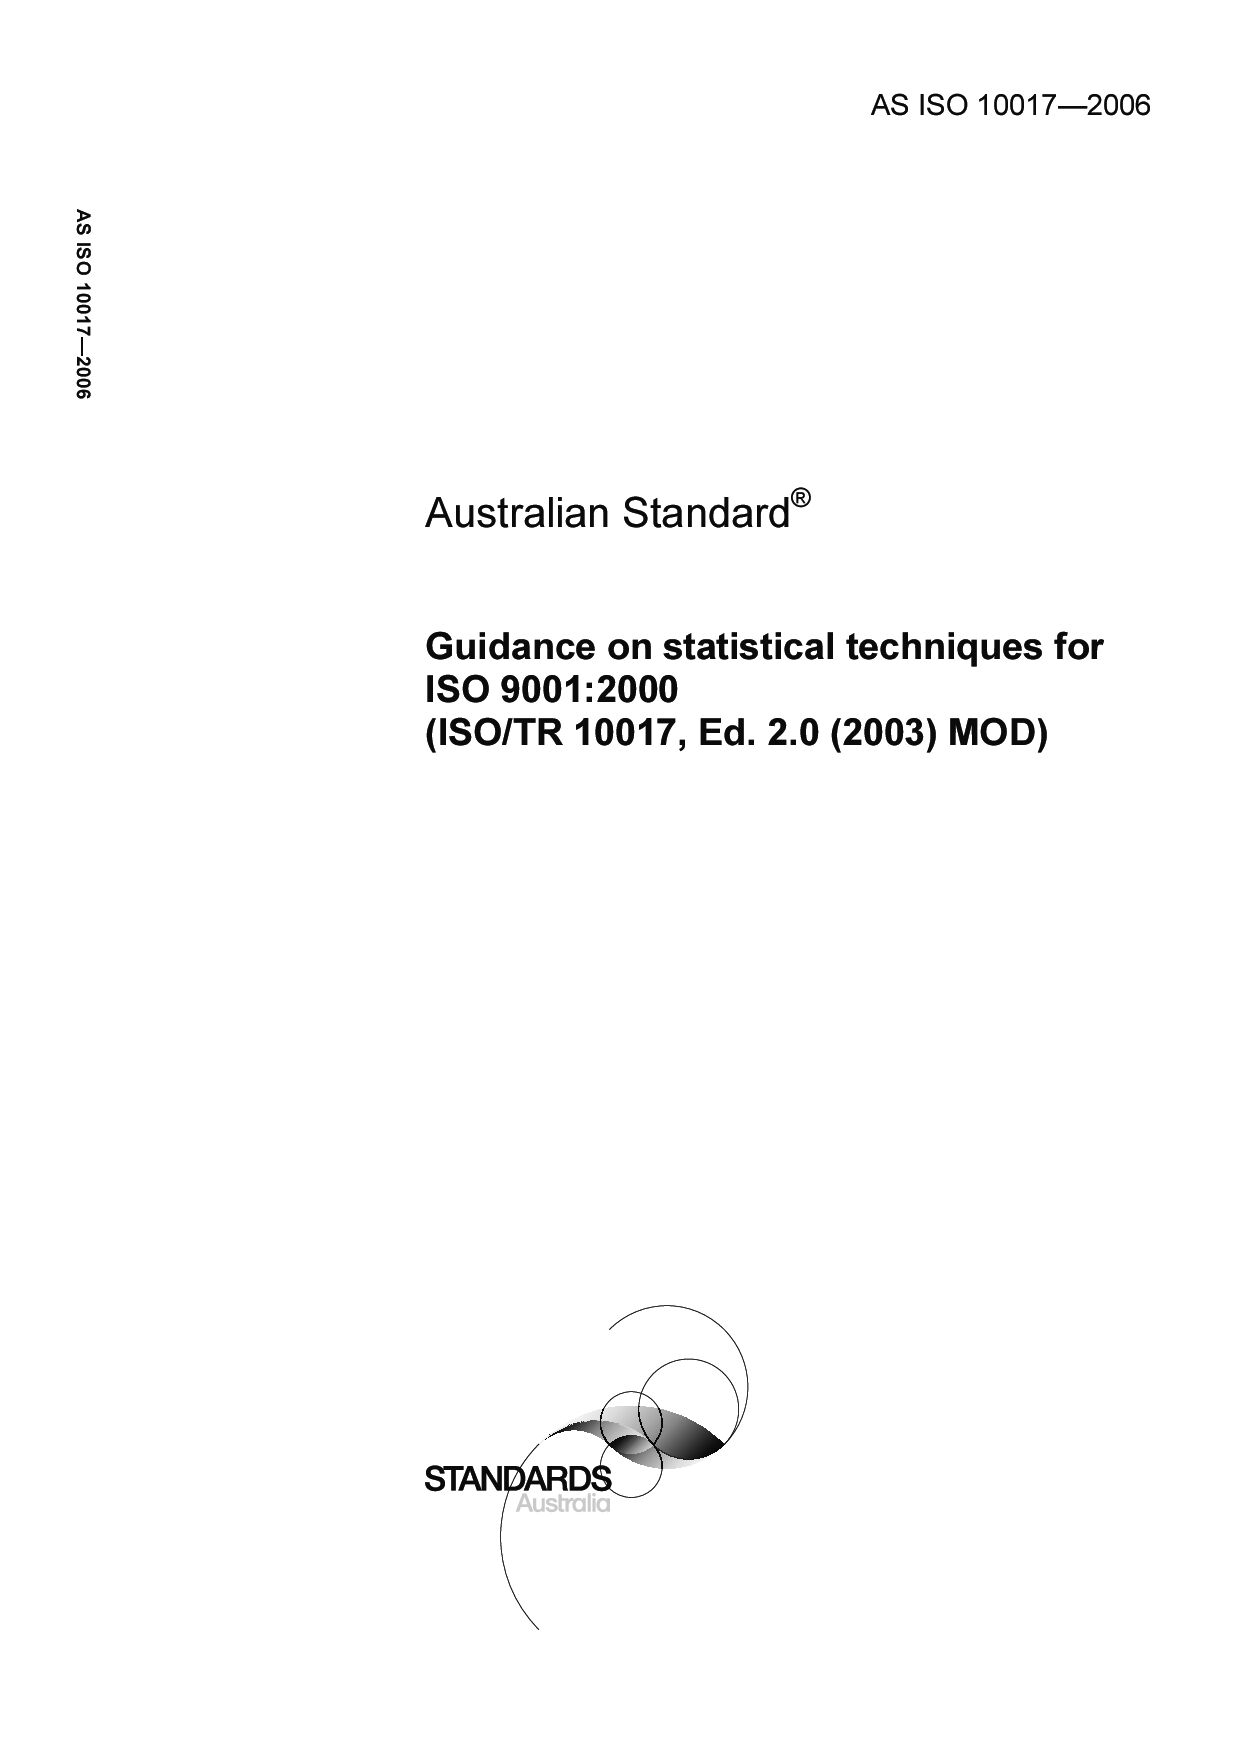 AS ISO 10017:2006封面图